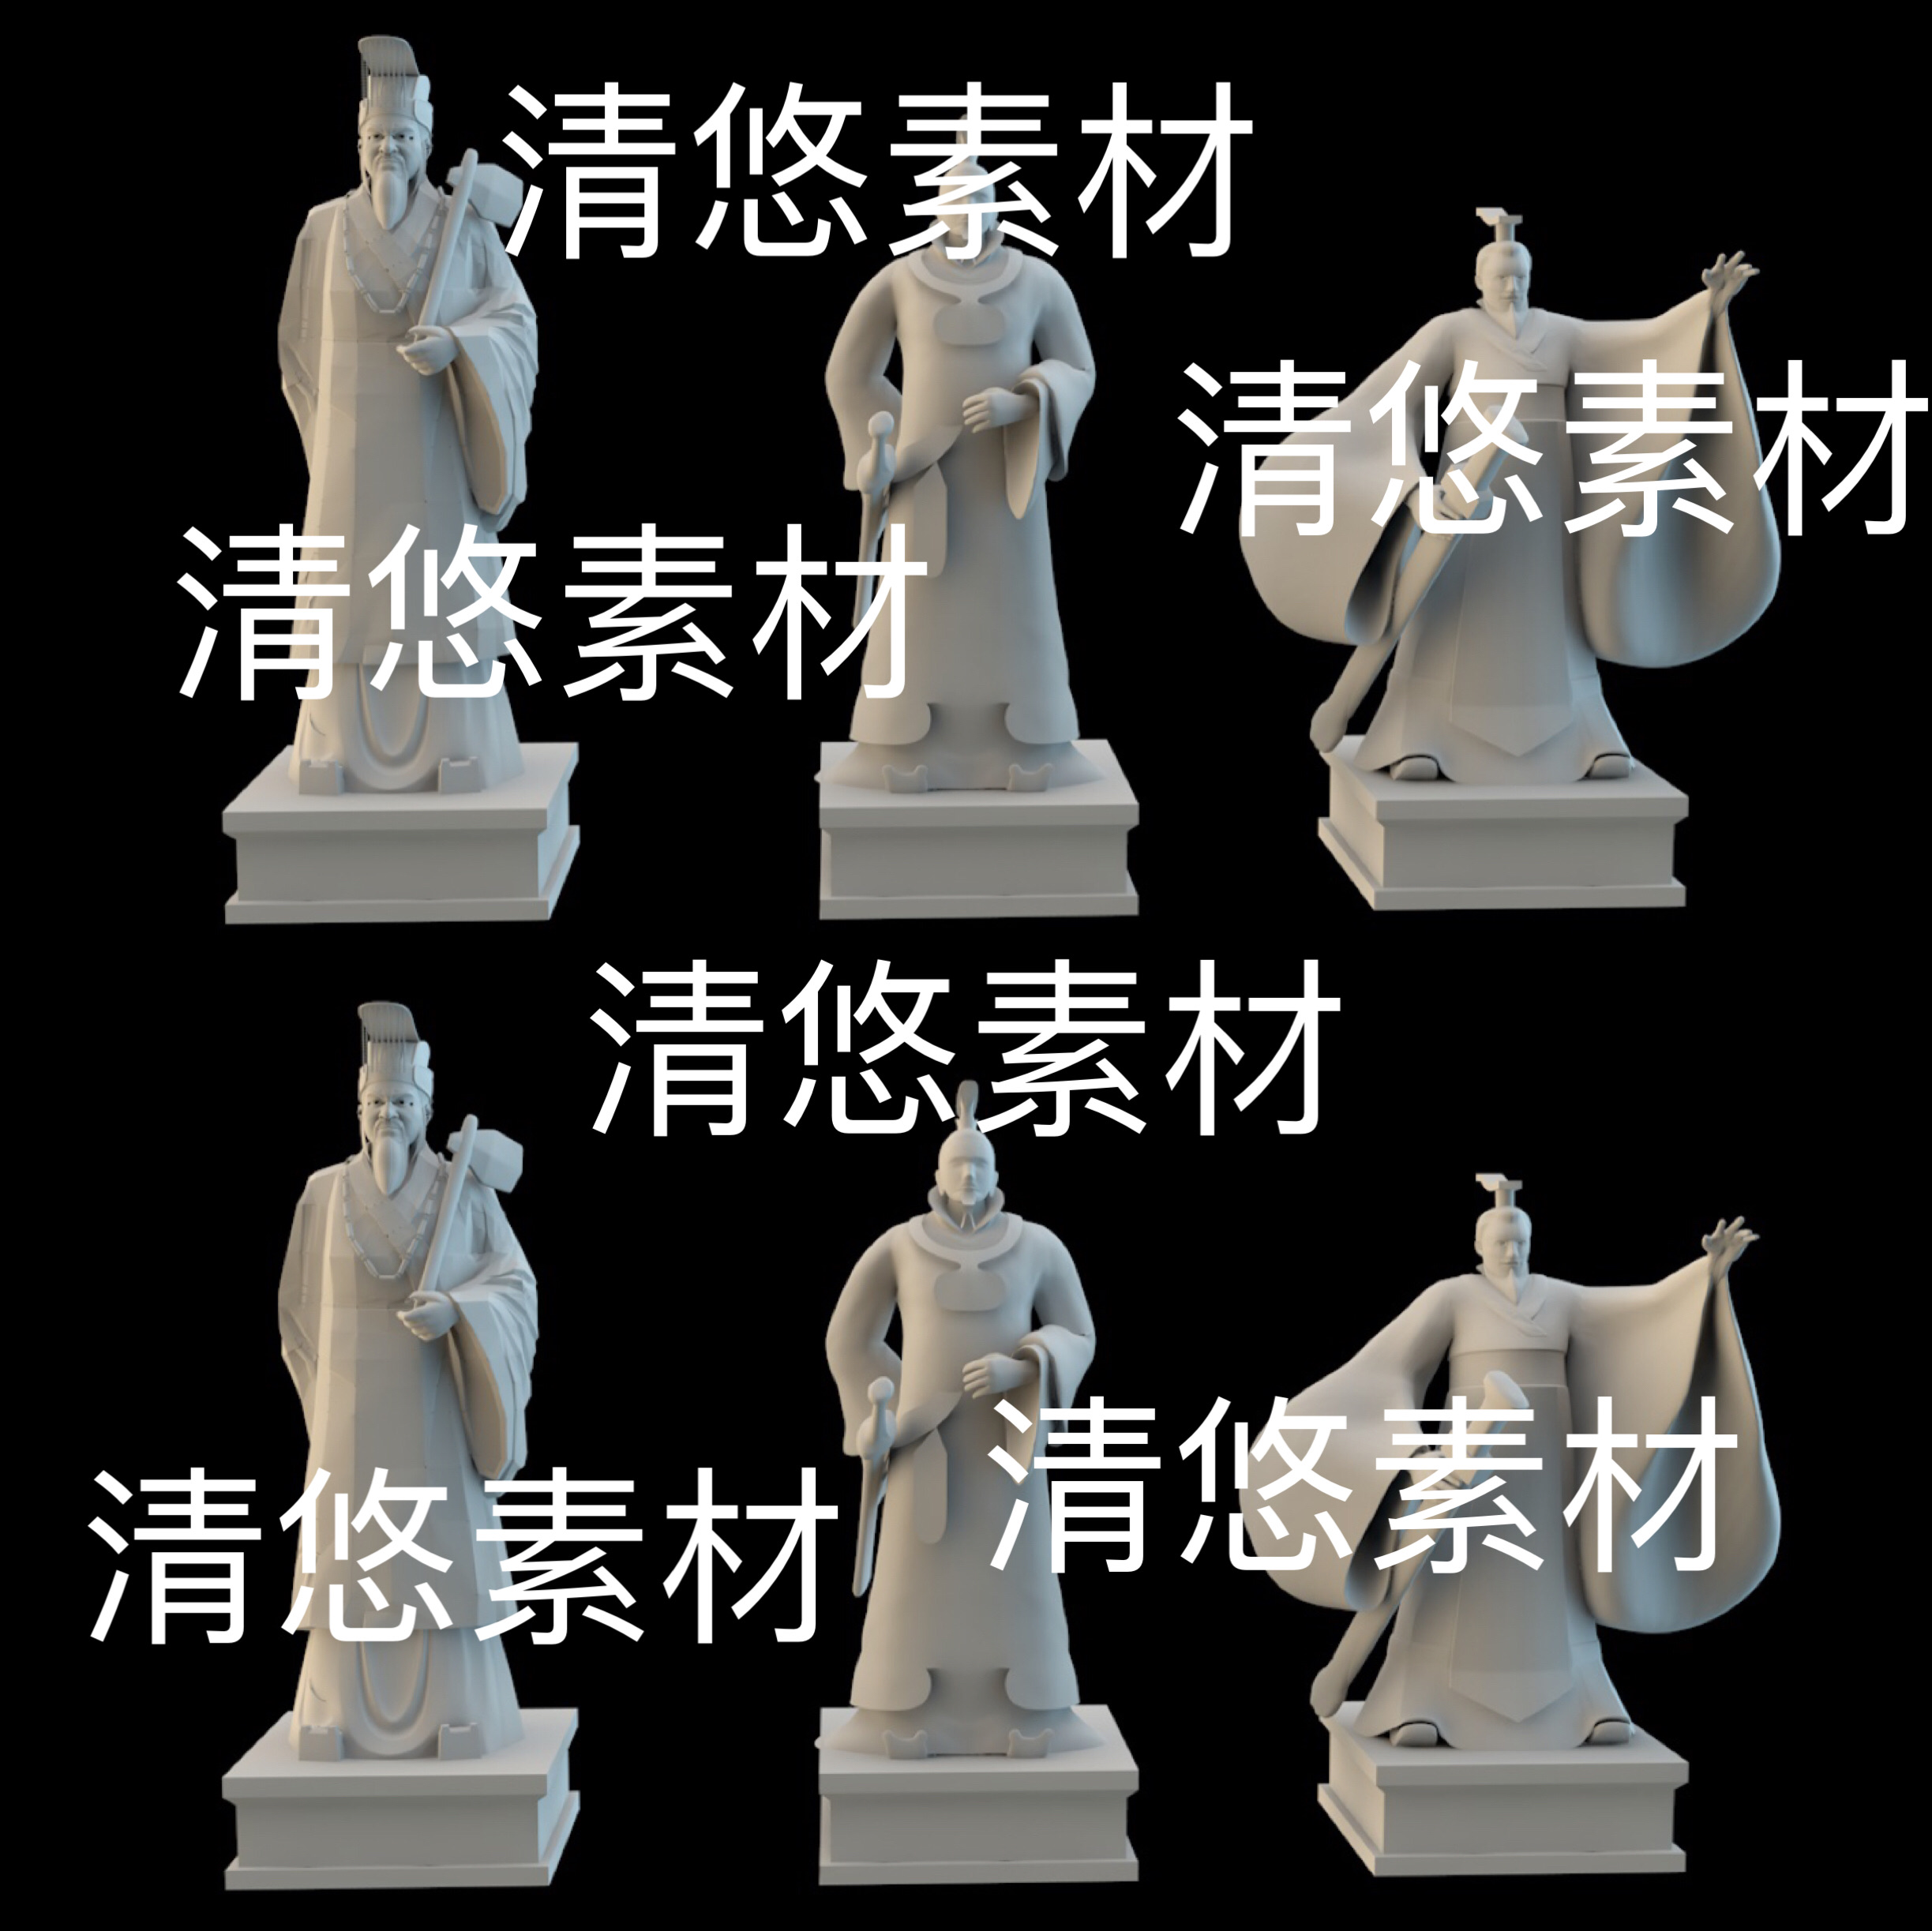 c4d fbx obj古代历人物皇帝雕像秦始皇赵匡胤模型文件 非实物D495